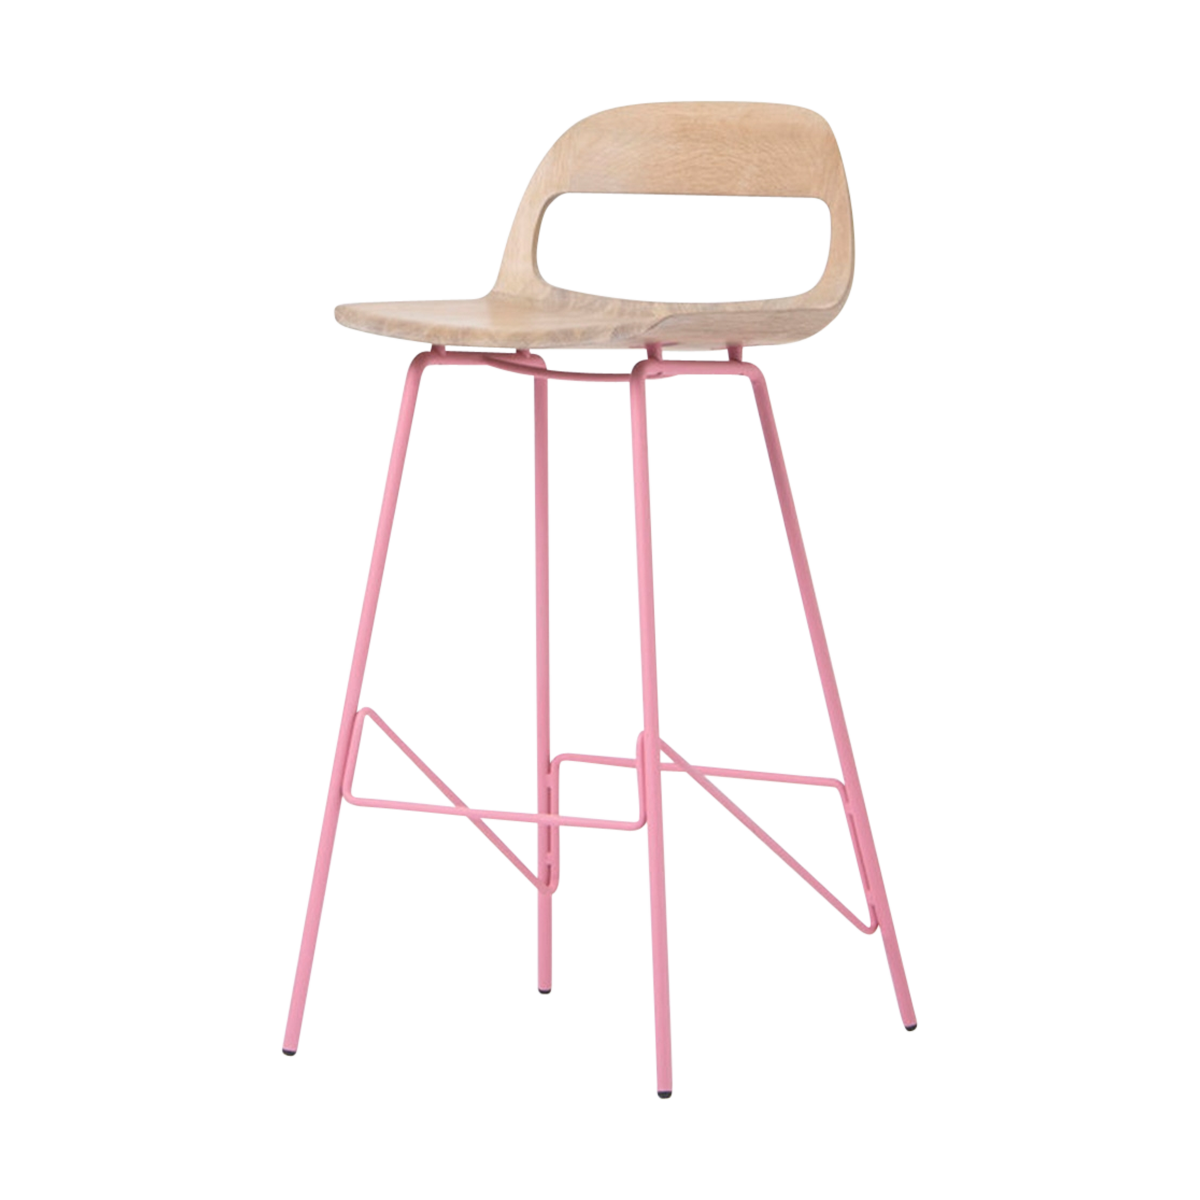 Leina bar chair - barkruk met houten zitting en roze onderstel - 75 cm 